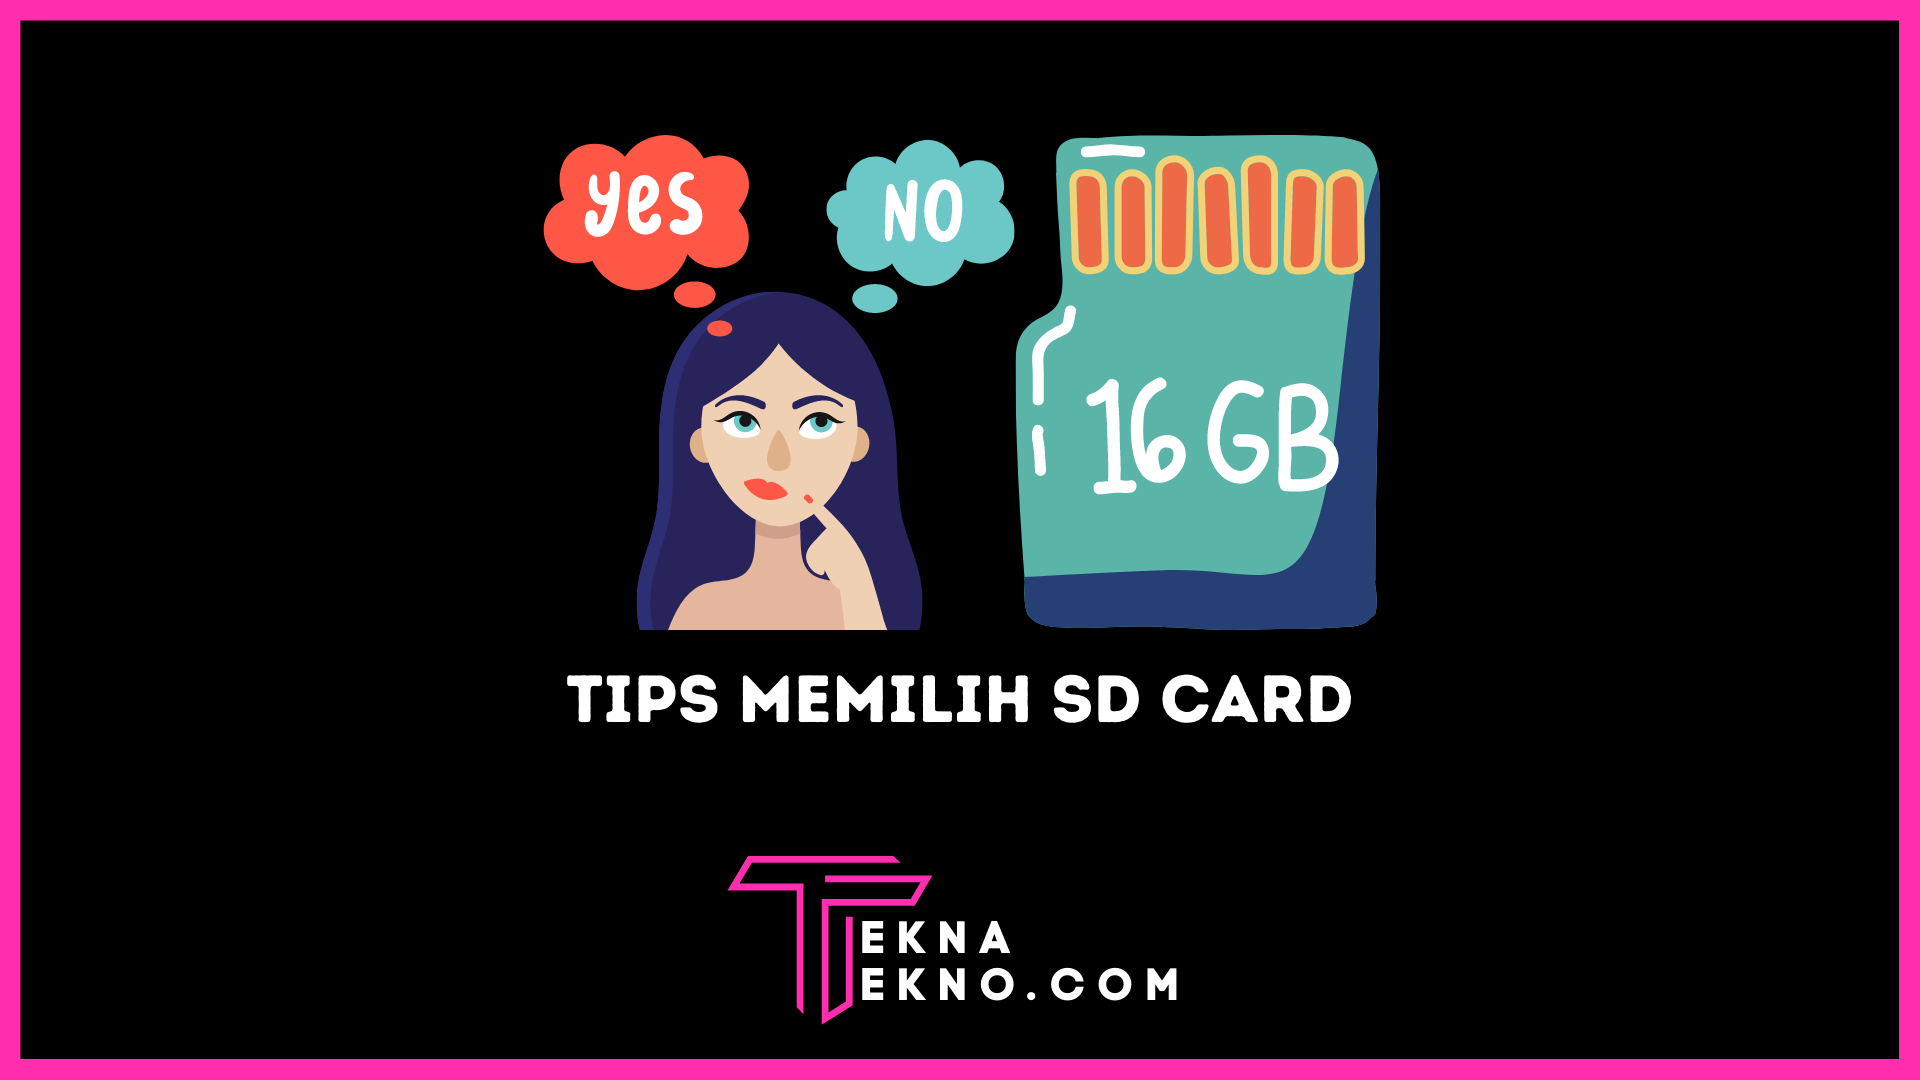 6 Tips Memilih SD Card yang Baik dan Berkualitas